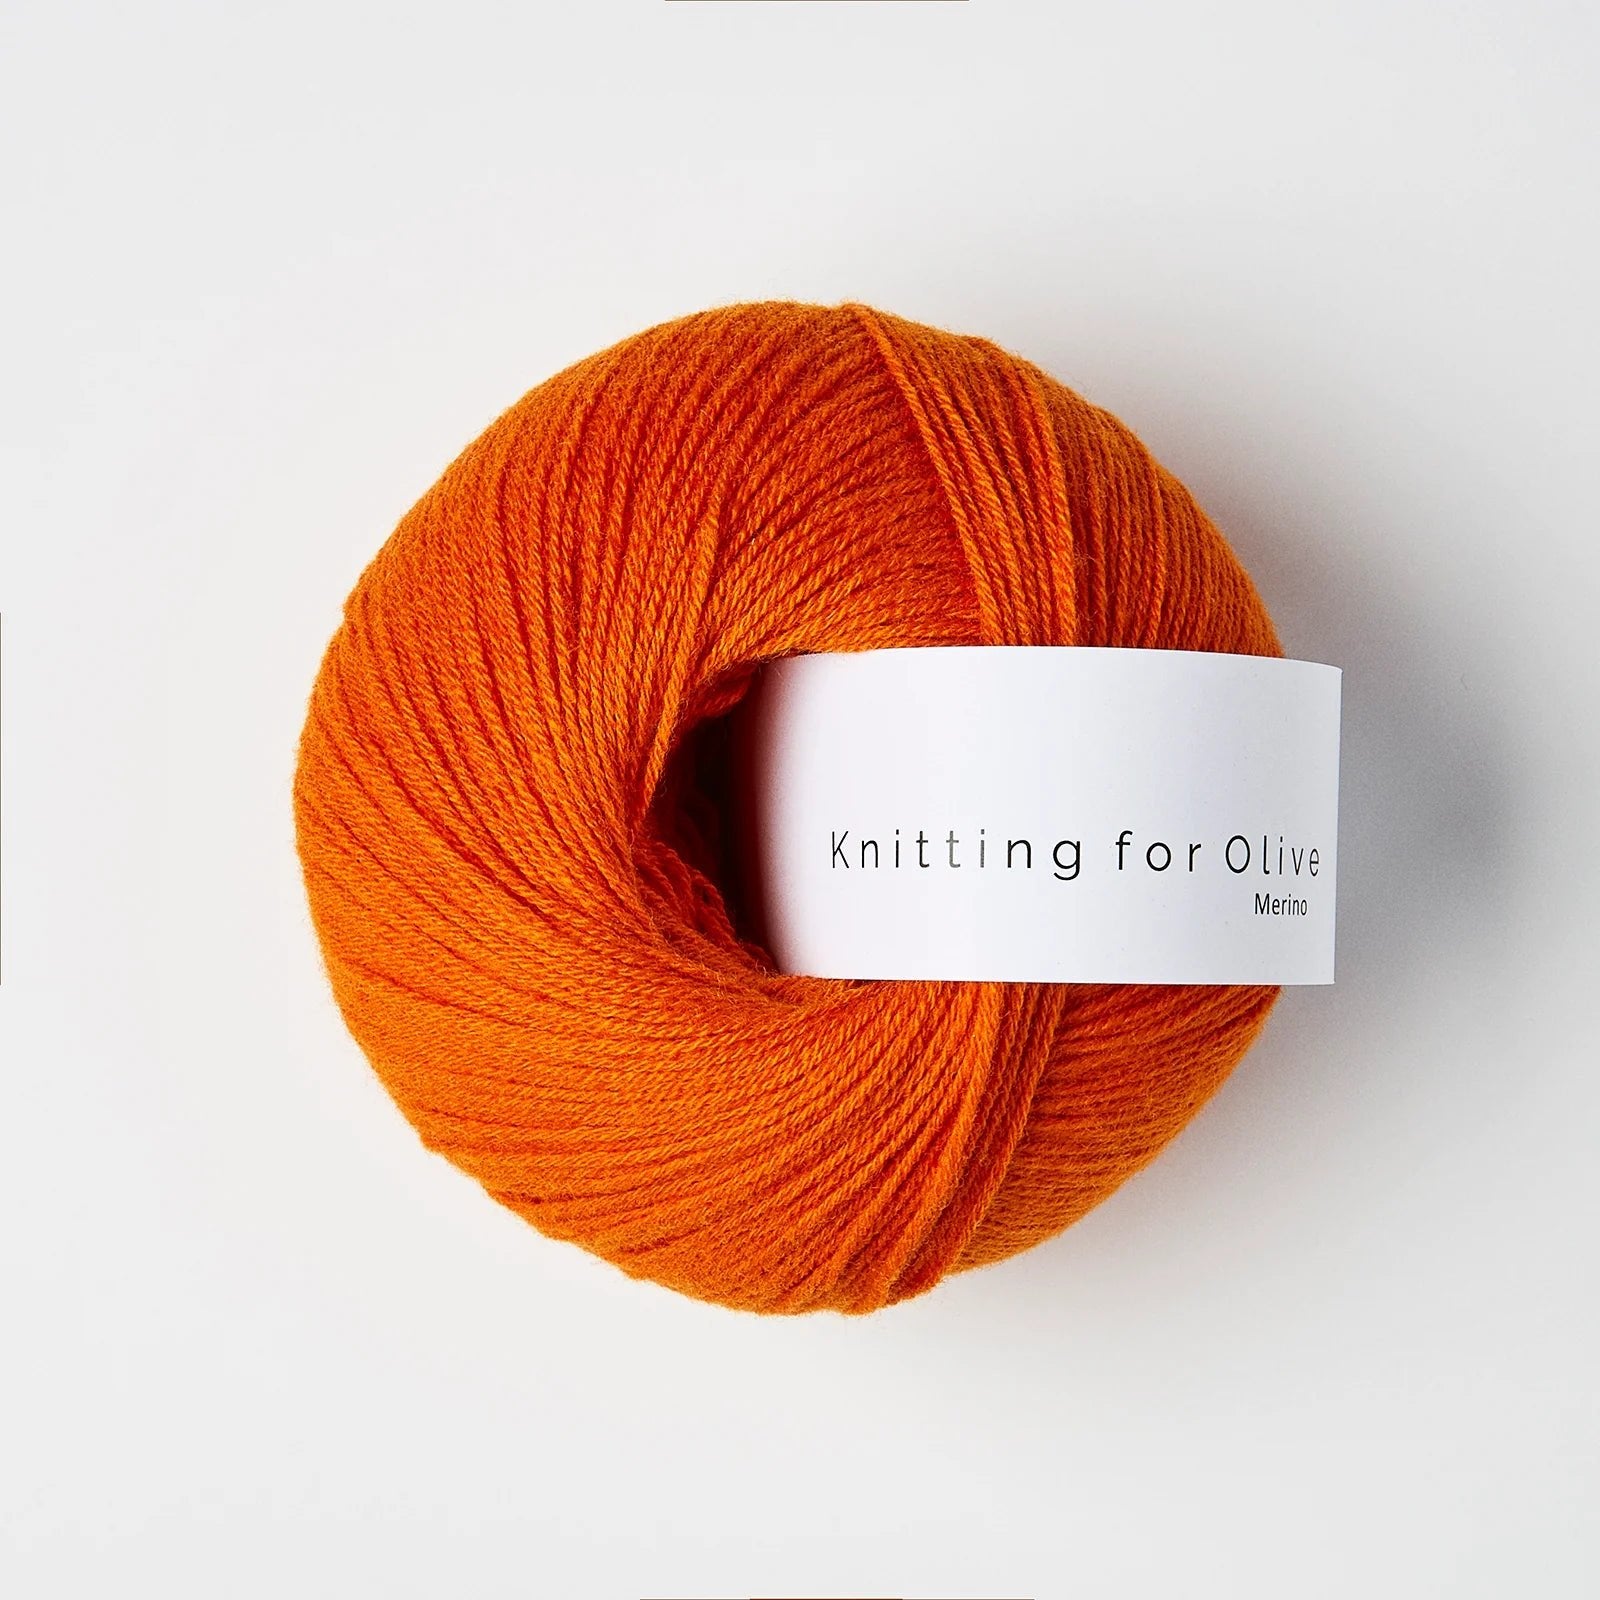 Knitting for Olive Merino - Knitting for Olive - Hokkaido - The Little Yarn Store